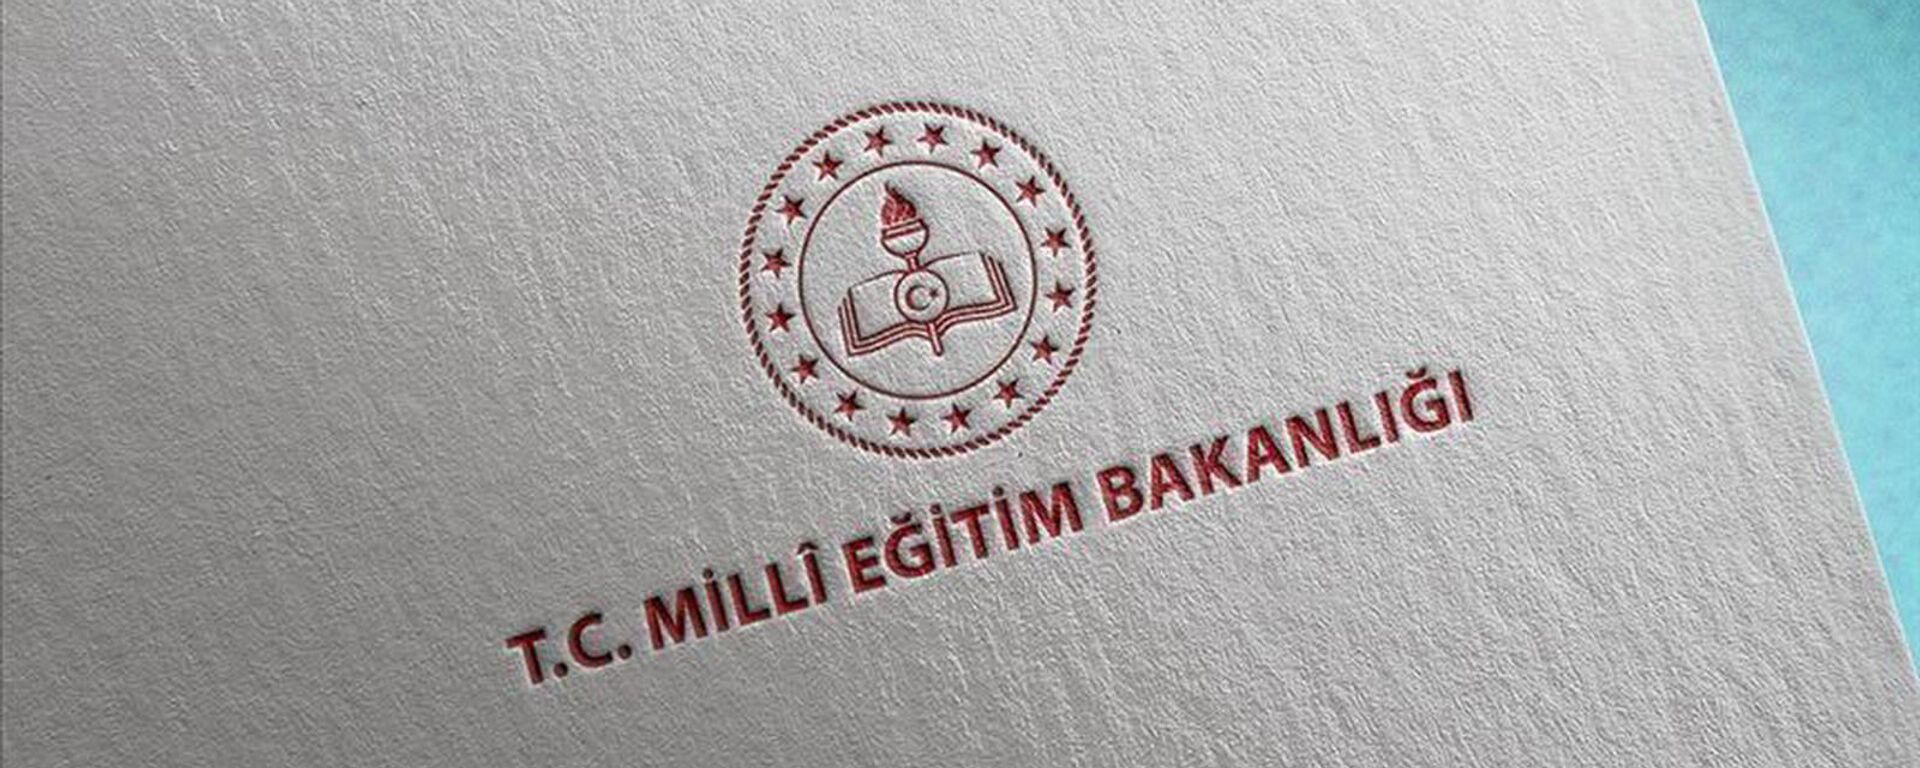 Milli Eğitim Bakanlığı - Sputnik Türkiye, 1920, 07.09.2021